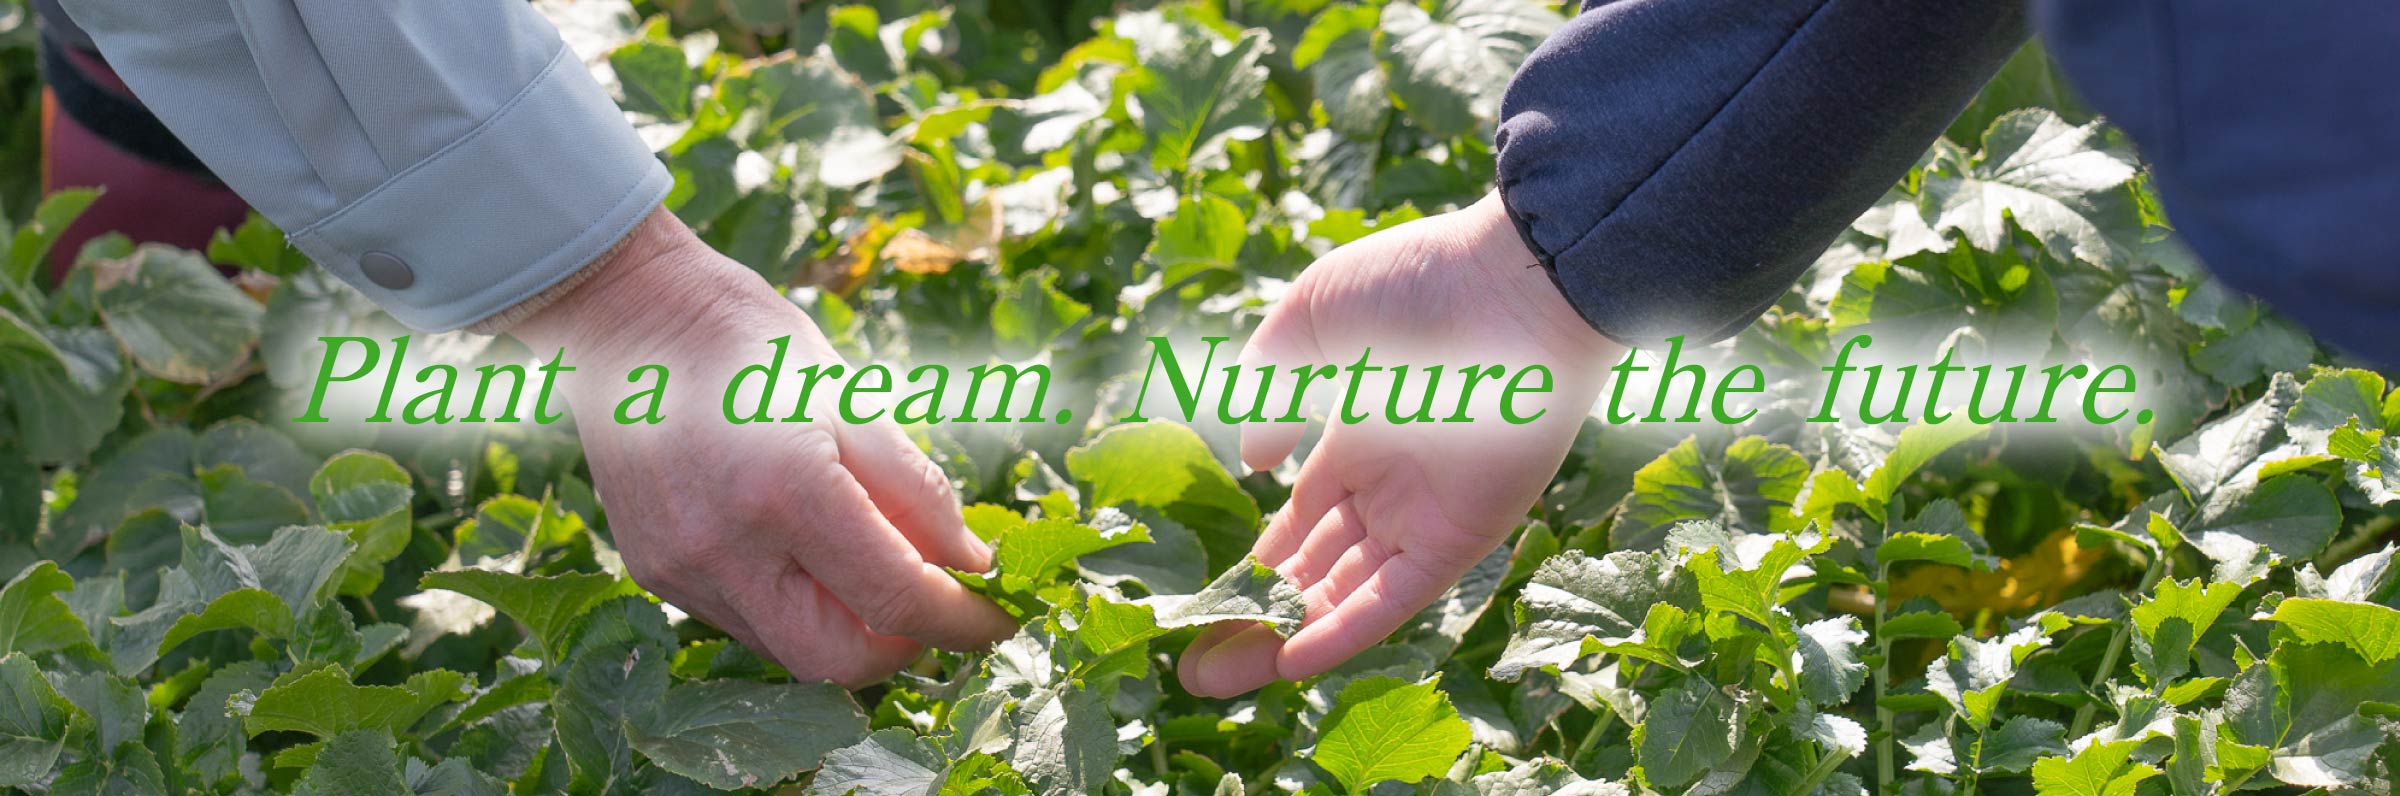 Plant a dream. Nurture the future.